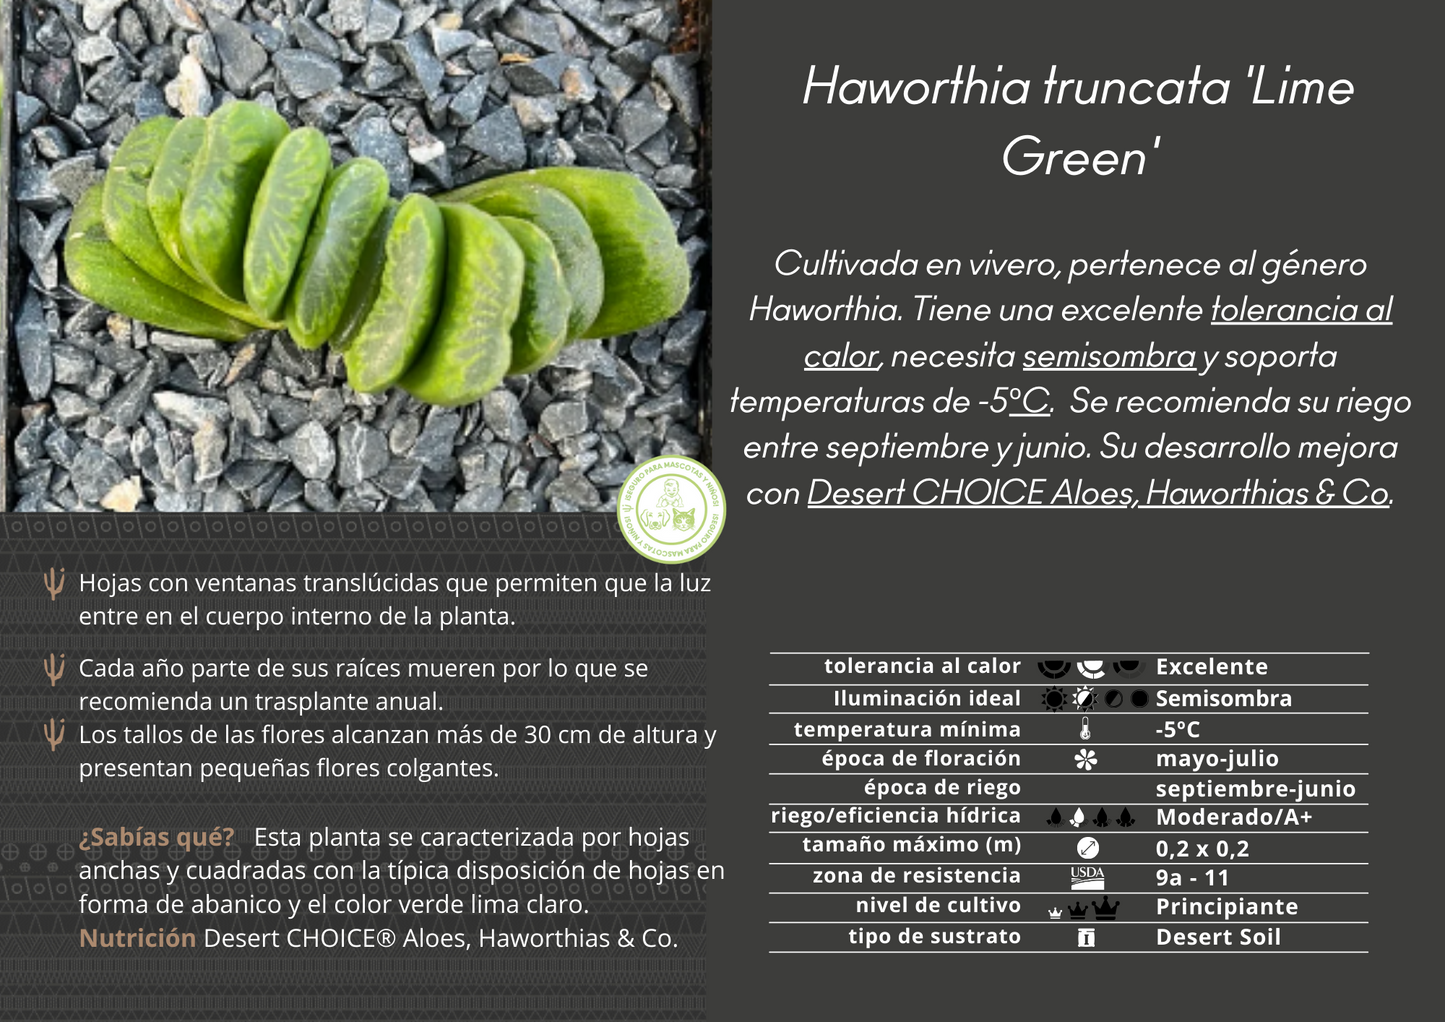 Haworthia truncata cv. lindgrün